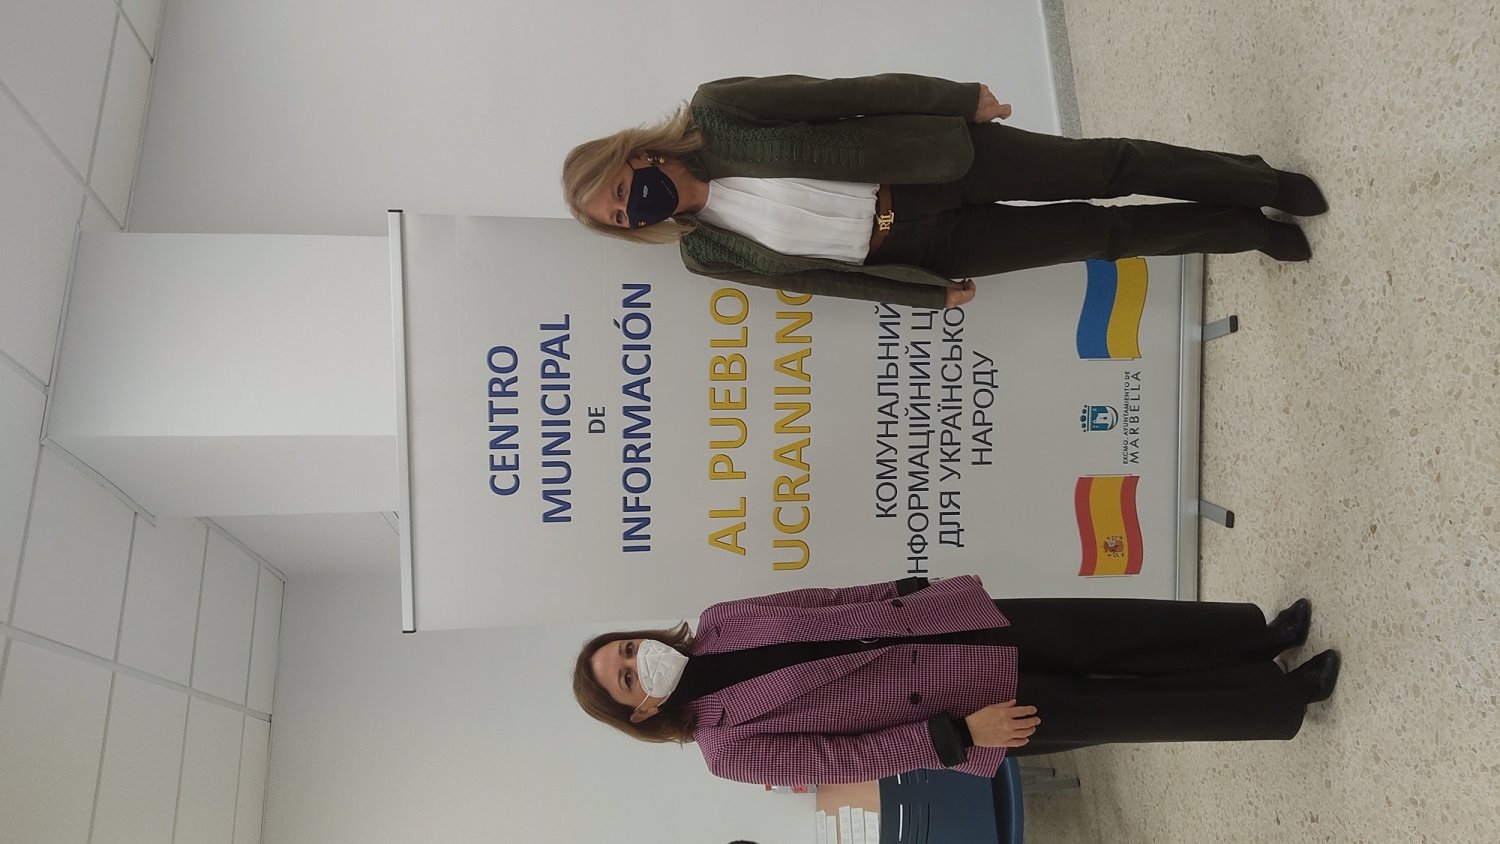 La delegada visita el centro de atención a refugiados de Marbella y alaba su labor